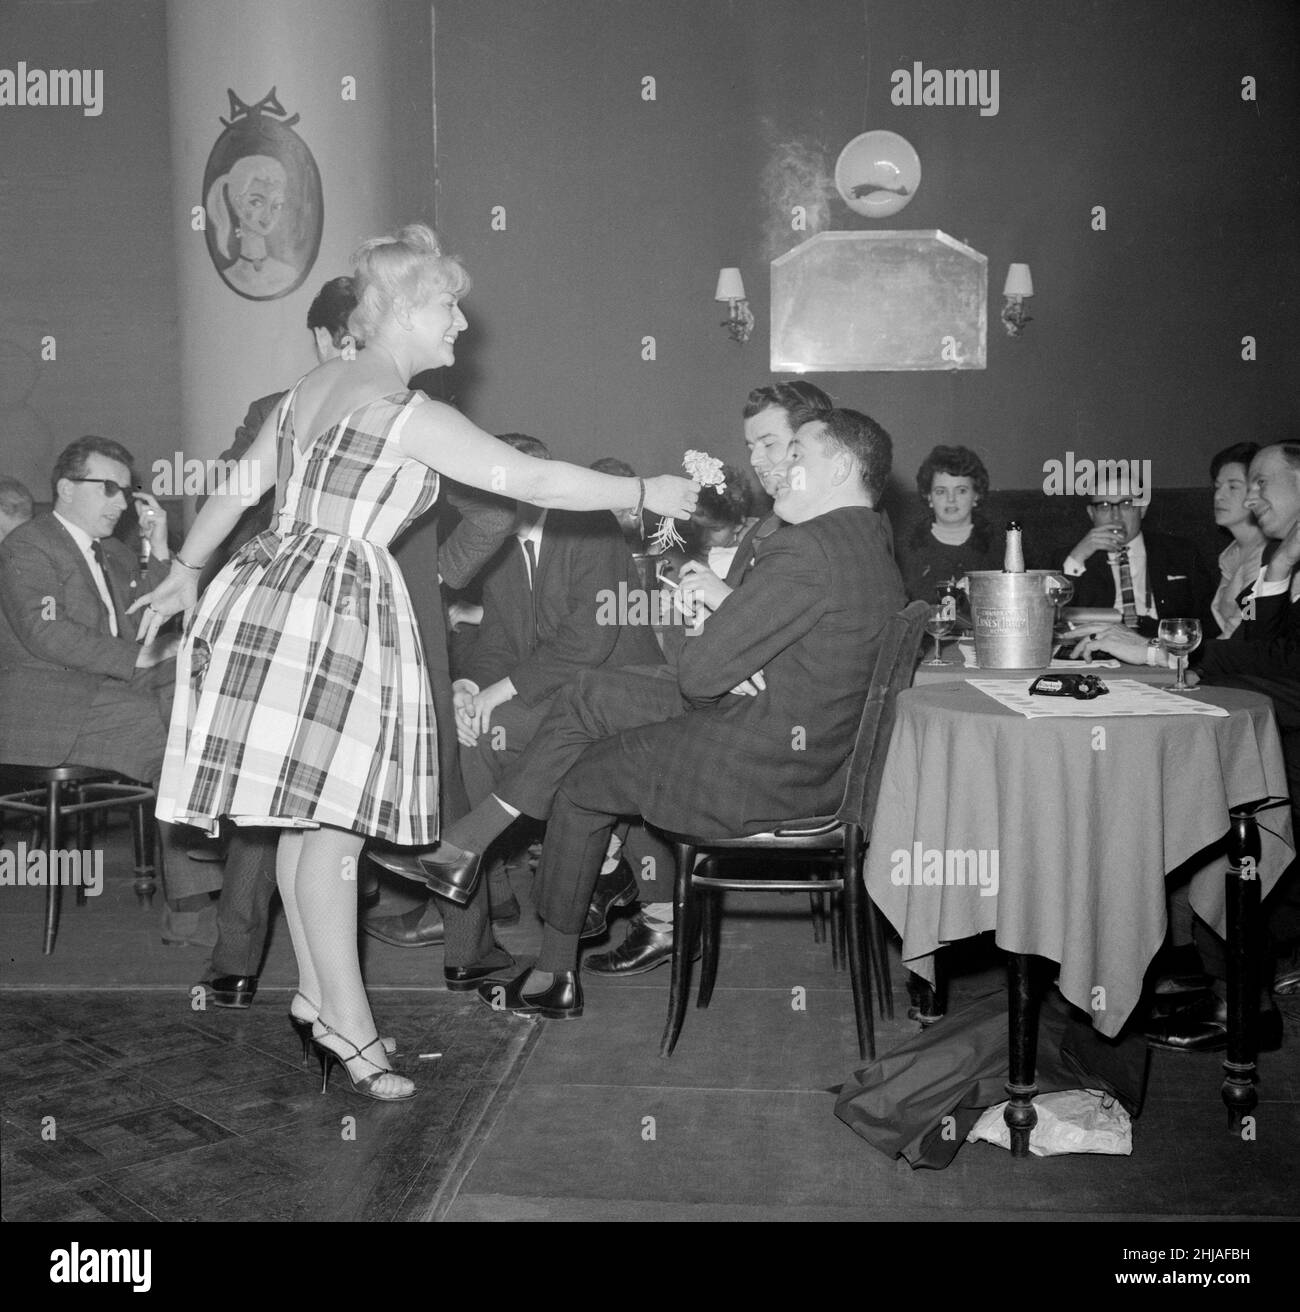 Il vincitore del Rally di Monte Carlo Paddy Hopkirk gode dell'attenzione di una hostess in un nightclub di Monte Carlo mentre celebra la sua vittoria. 25th gennaio 1964. Foto Stock